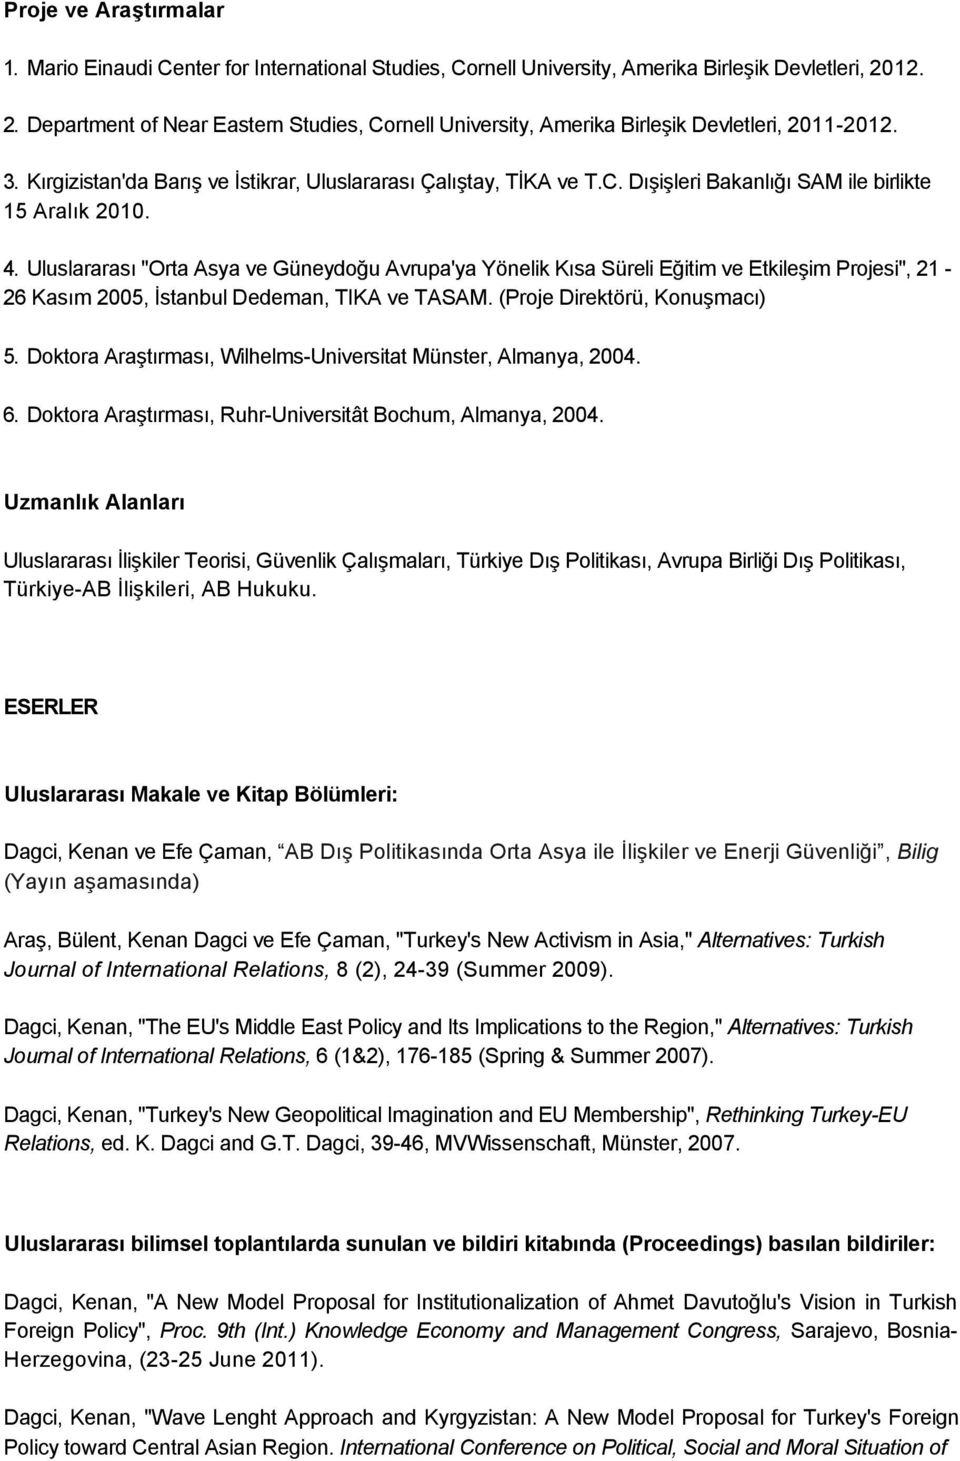 4. Uluslararası "Orta Asya ve Güneydoğu Avrupa'ya Yönelik Kısa Süreli Eğitim ve Etkileşim Projesi", 21-26 Kasım 2005, İstanbul Dedeman, TIKA ve TASAM. (Proje Direktörü, Konuşmacı) 5.